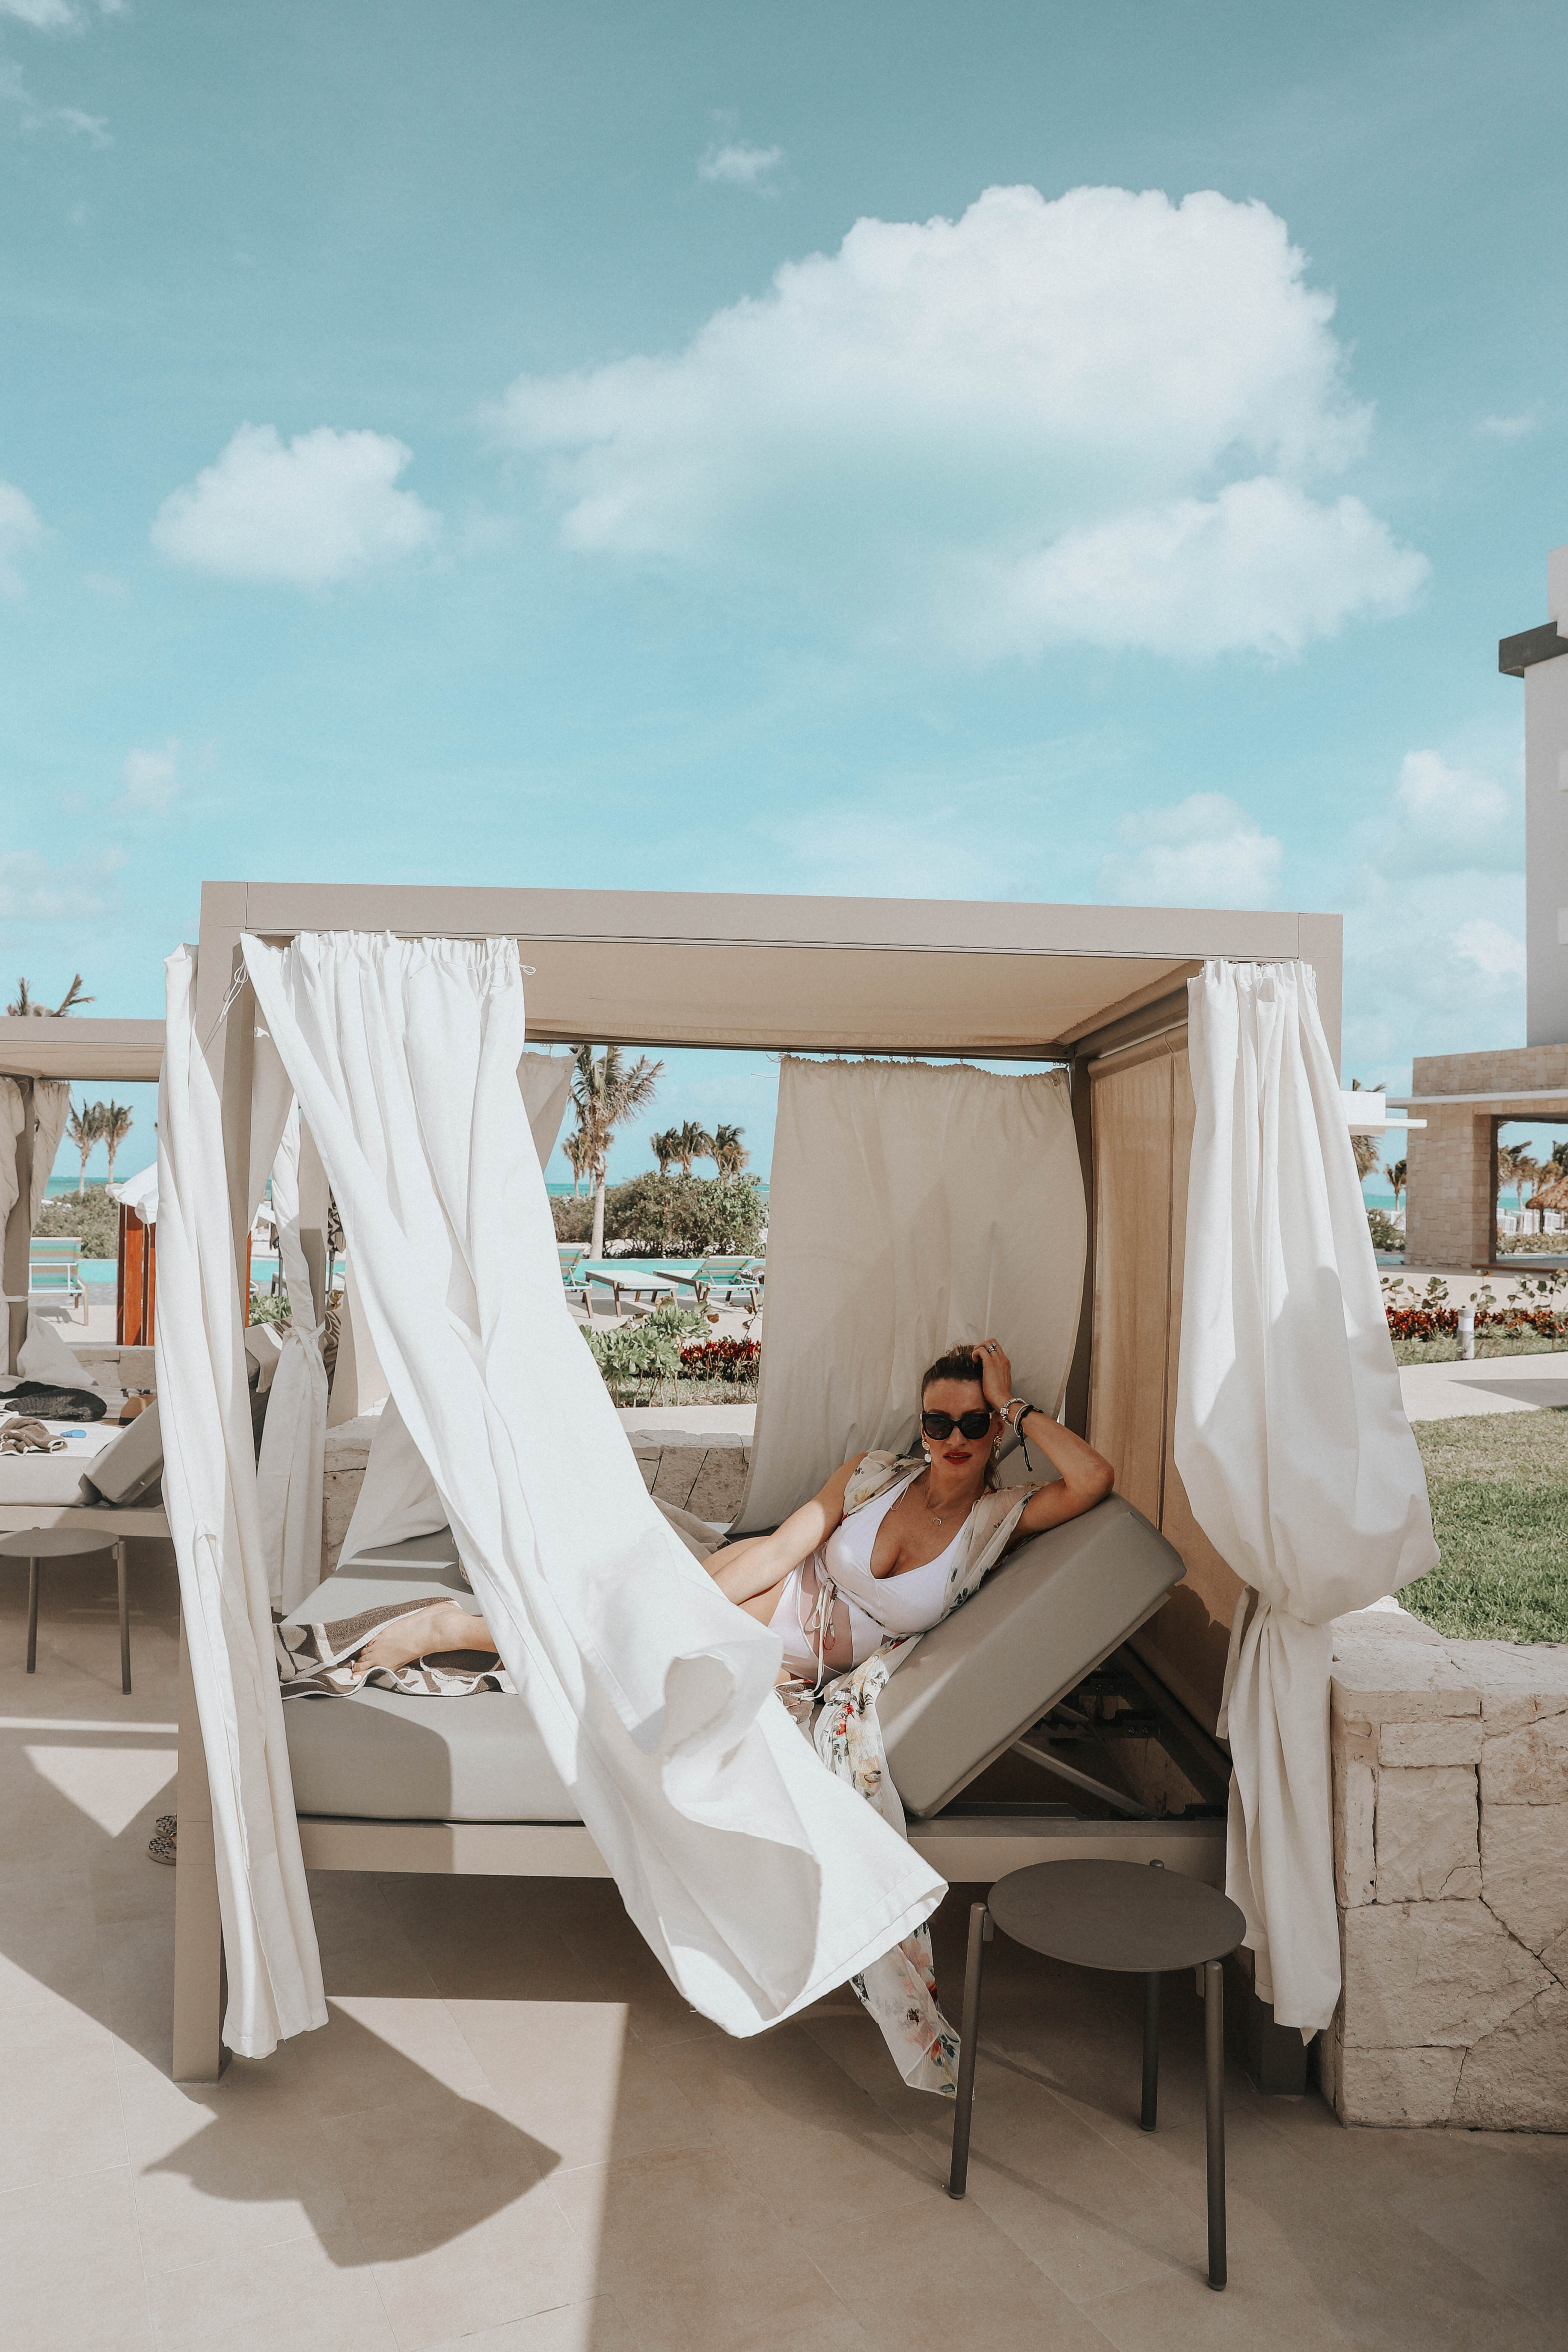 MON MODE | Fashion Blogger | Travel Blogger | Mexico | Bali Beds | Cabana 